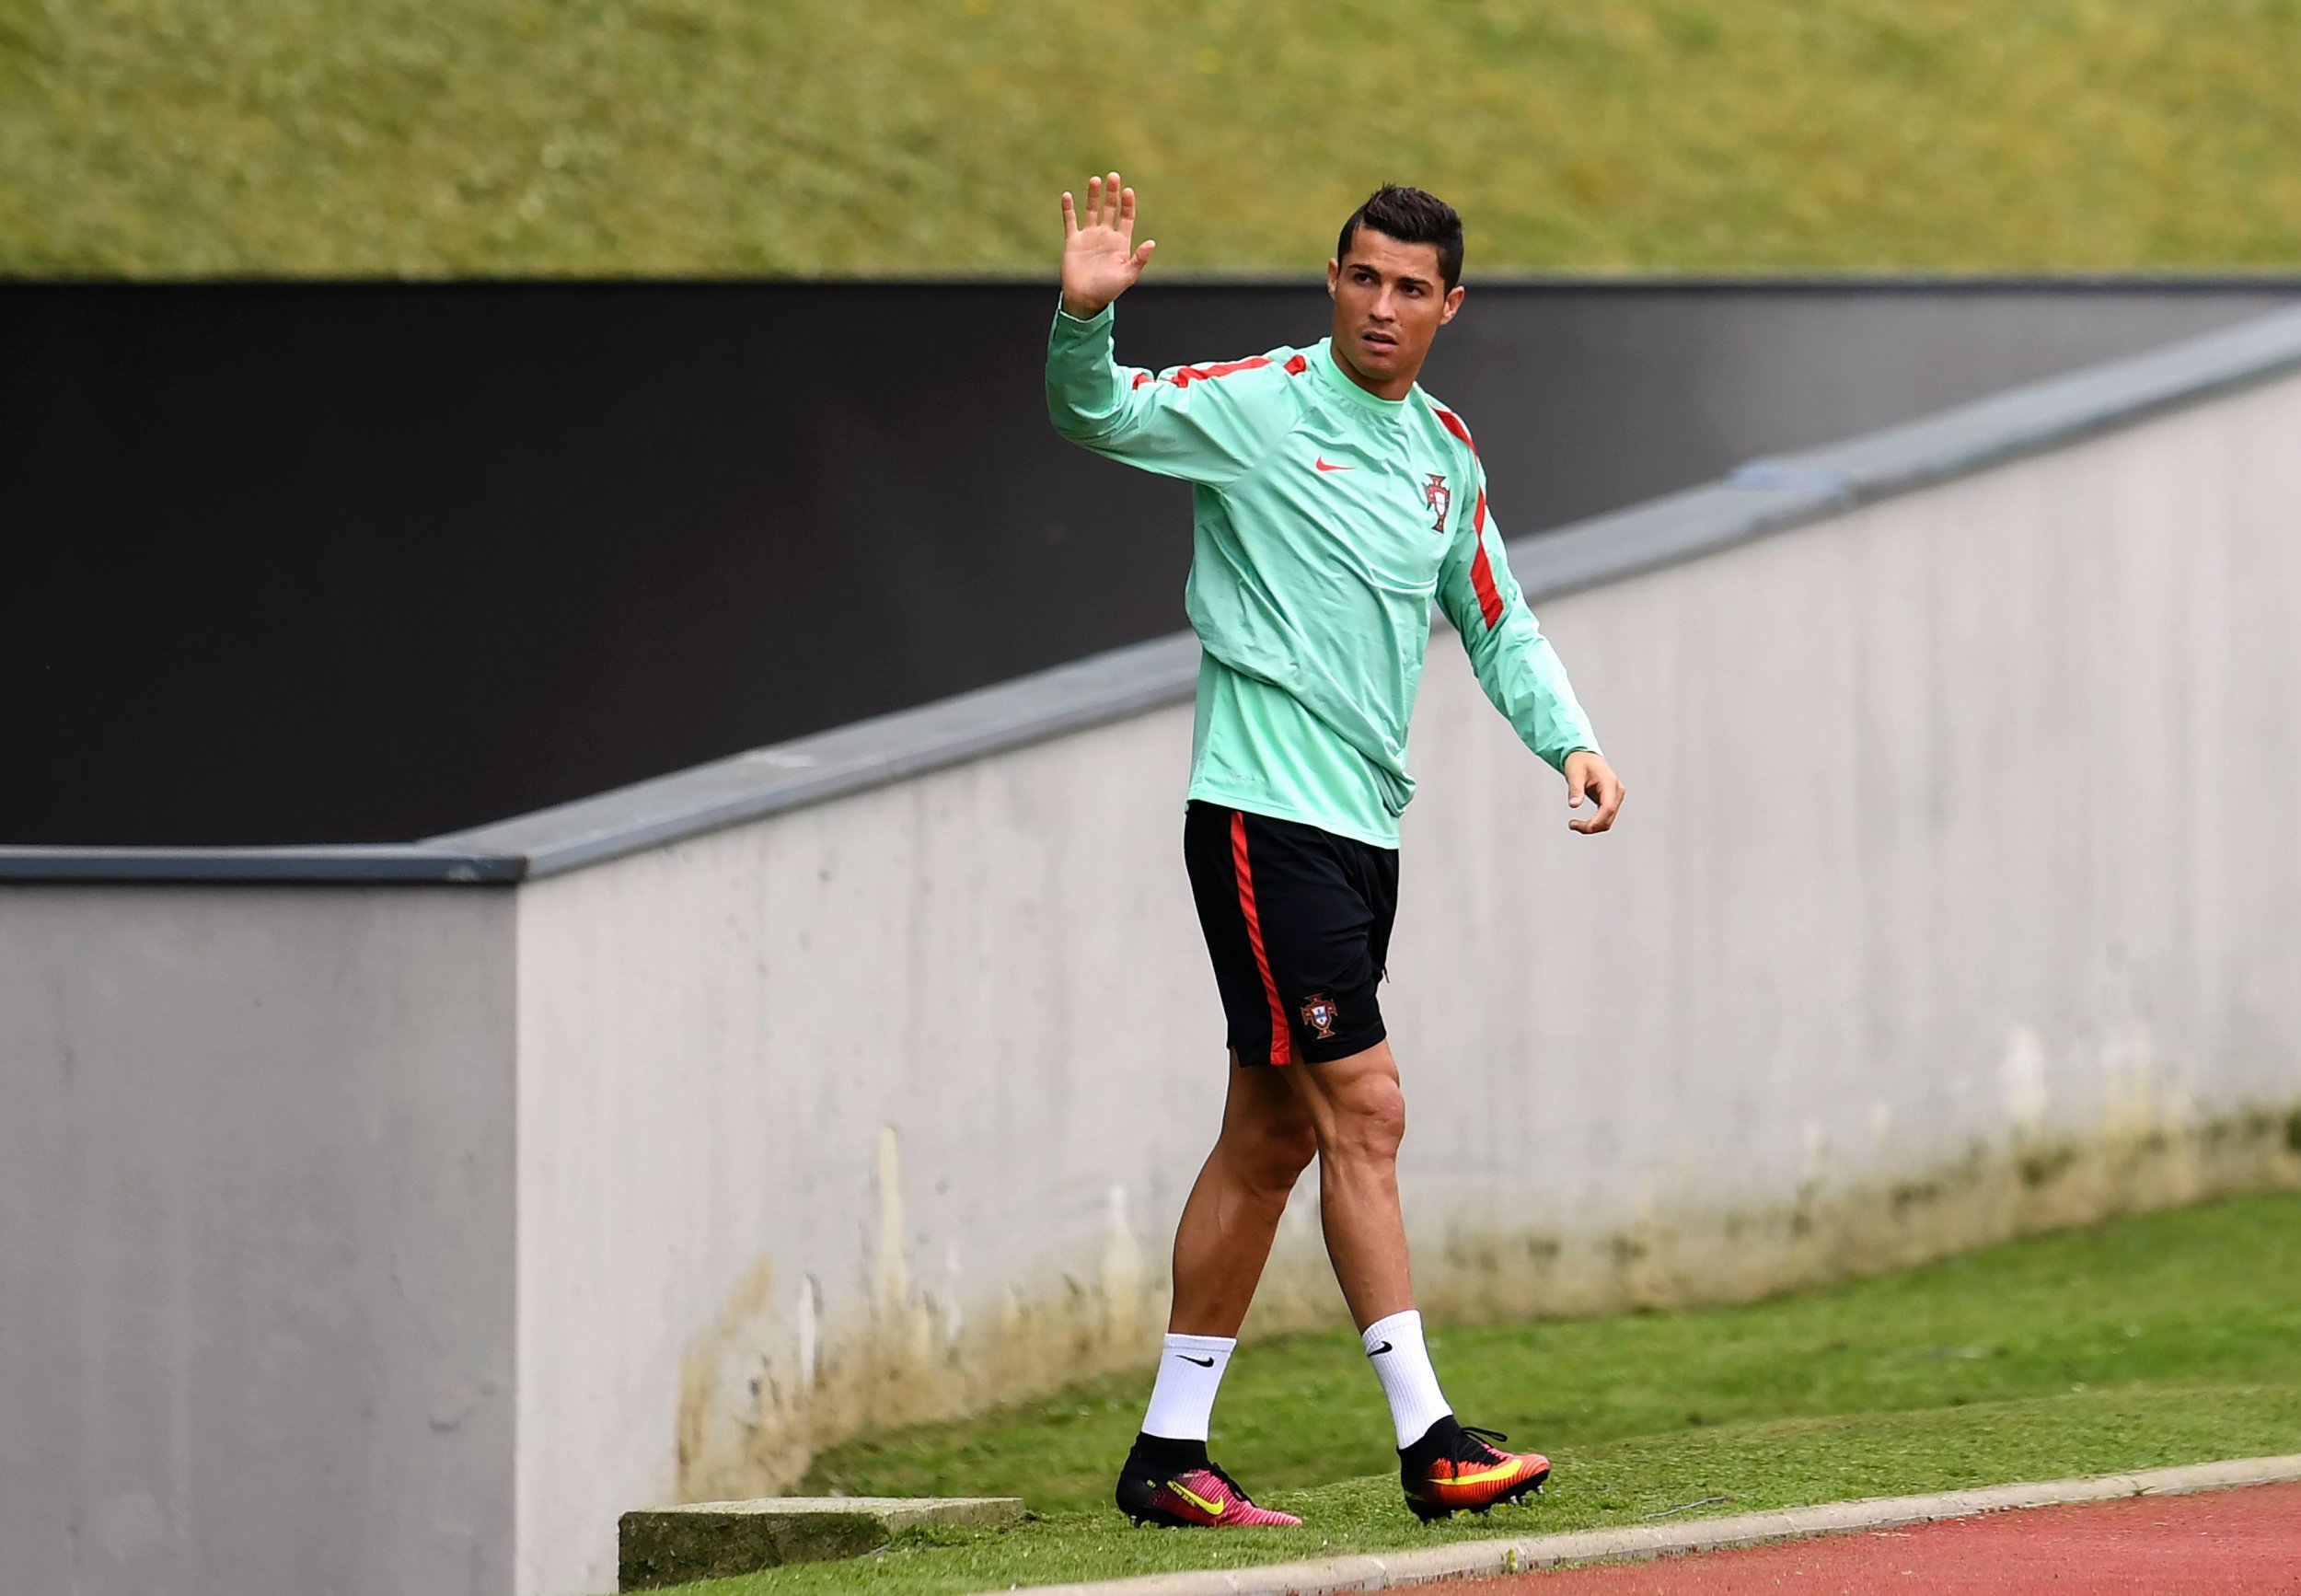 Portugal captain Cristiano Ronaldo.